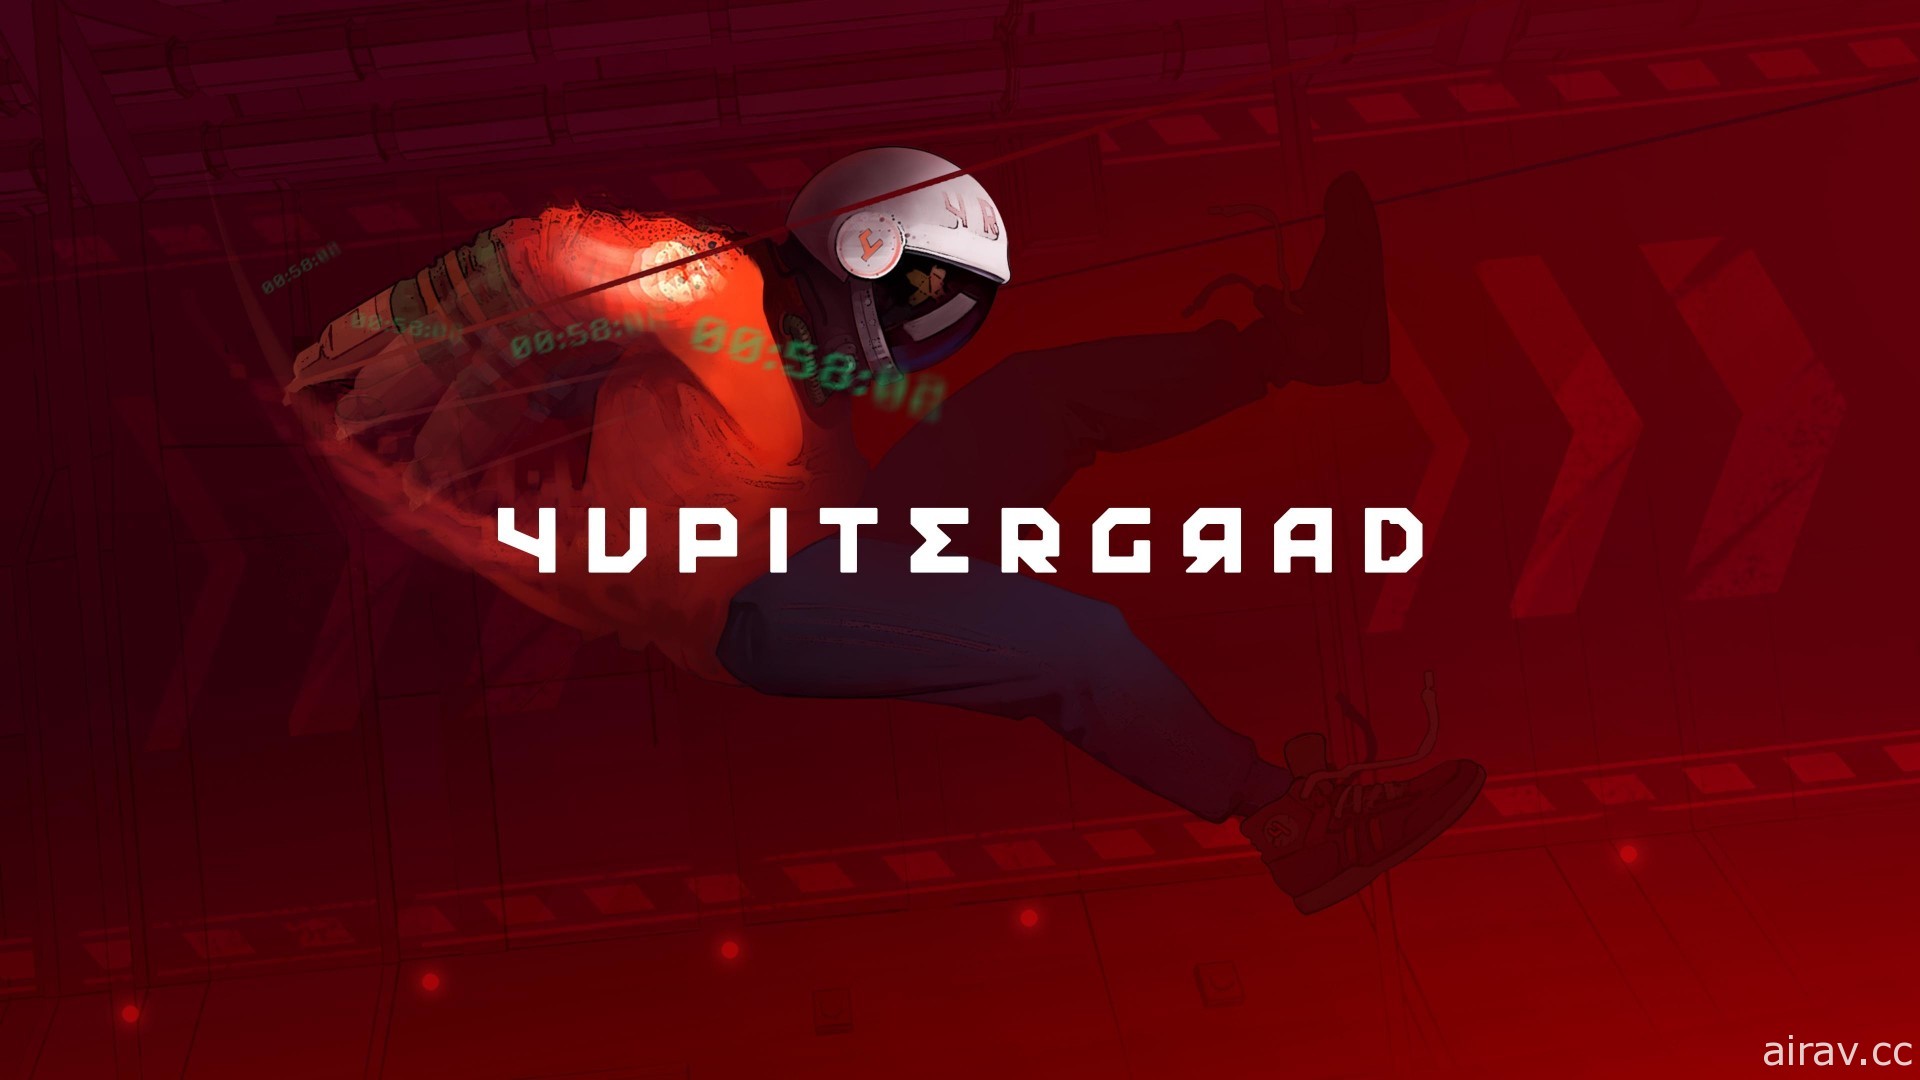 扮演飄盪太空人的《Yupitergrad》將於今年 12 月在亞洲推出 PS VR 版本